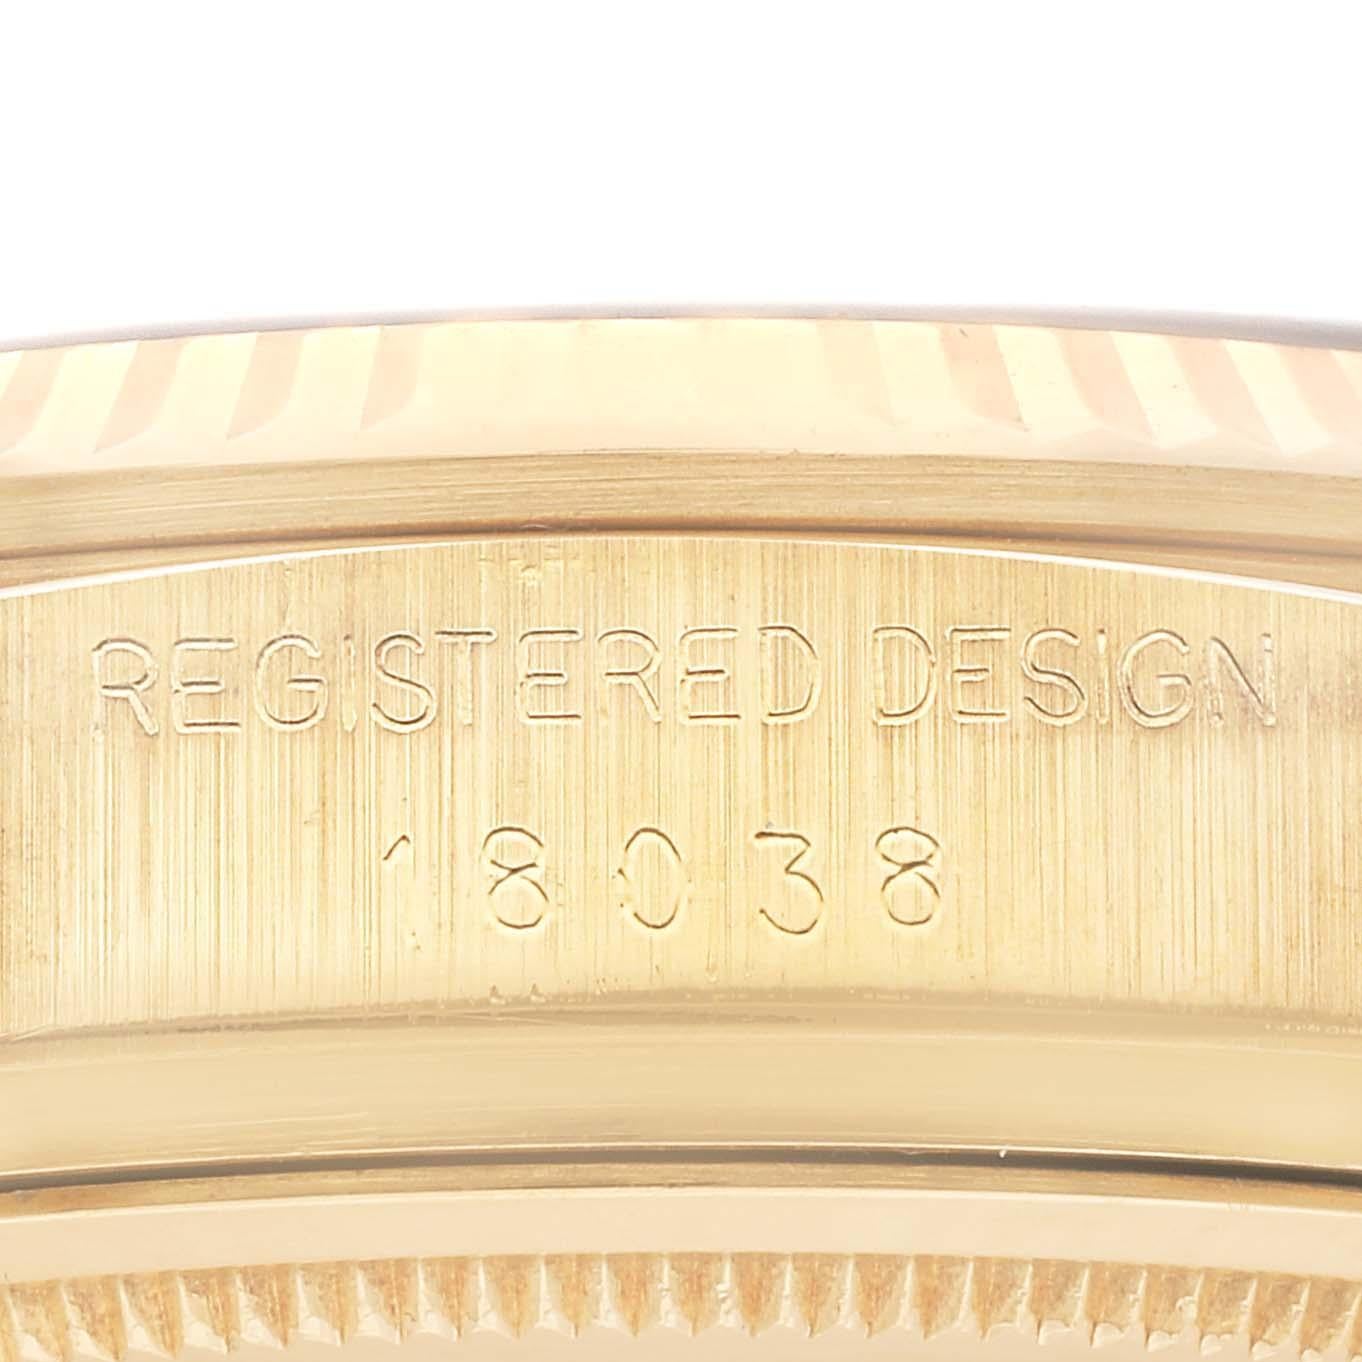 Rolex President Day-Date Gelbgold Blaues Zifferblatt Herrenuhr 18038. Offiziell zertifiziertes Chronometer-Automatikwerk mit automatischem Aufzug. Oyster-Gehäuse aus 18 Karat Gelbgold mit einem Durchmesser von 36,0 mm.  Rolex Logo auf einer Krone.